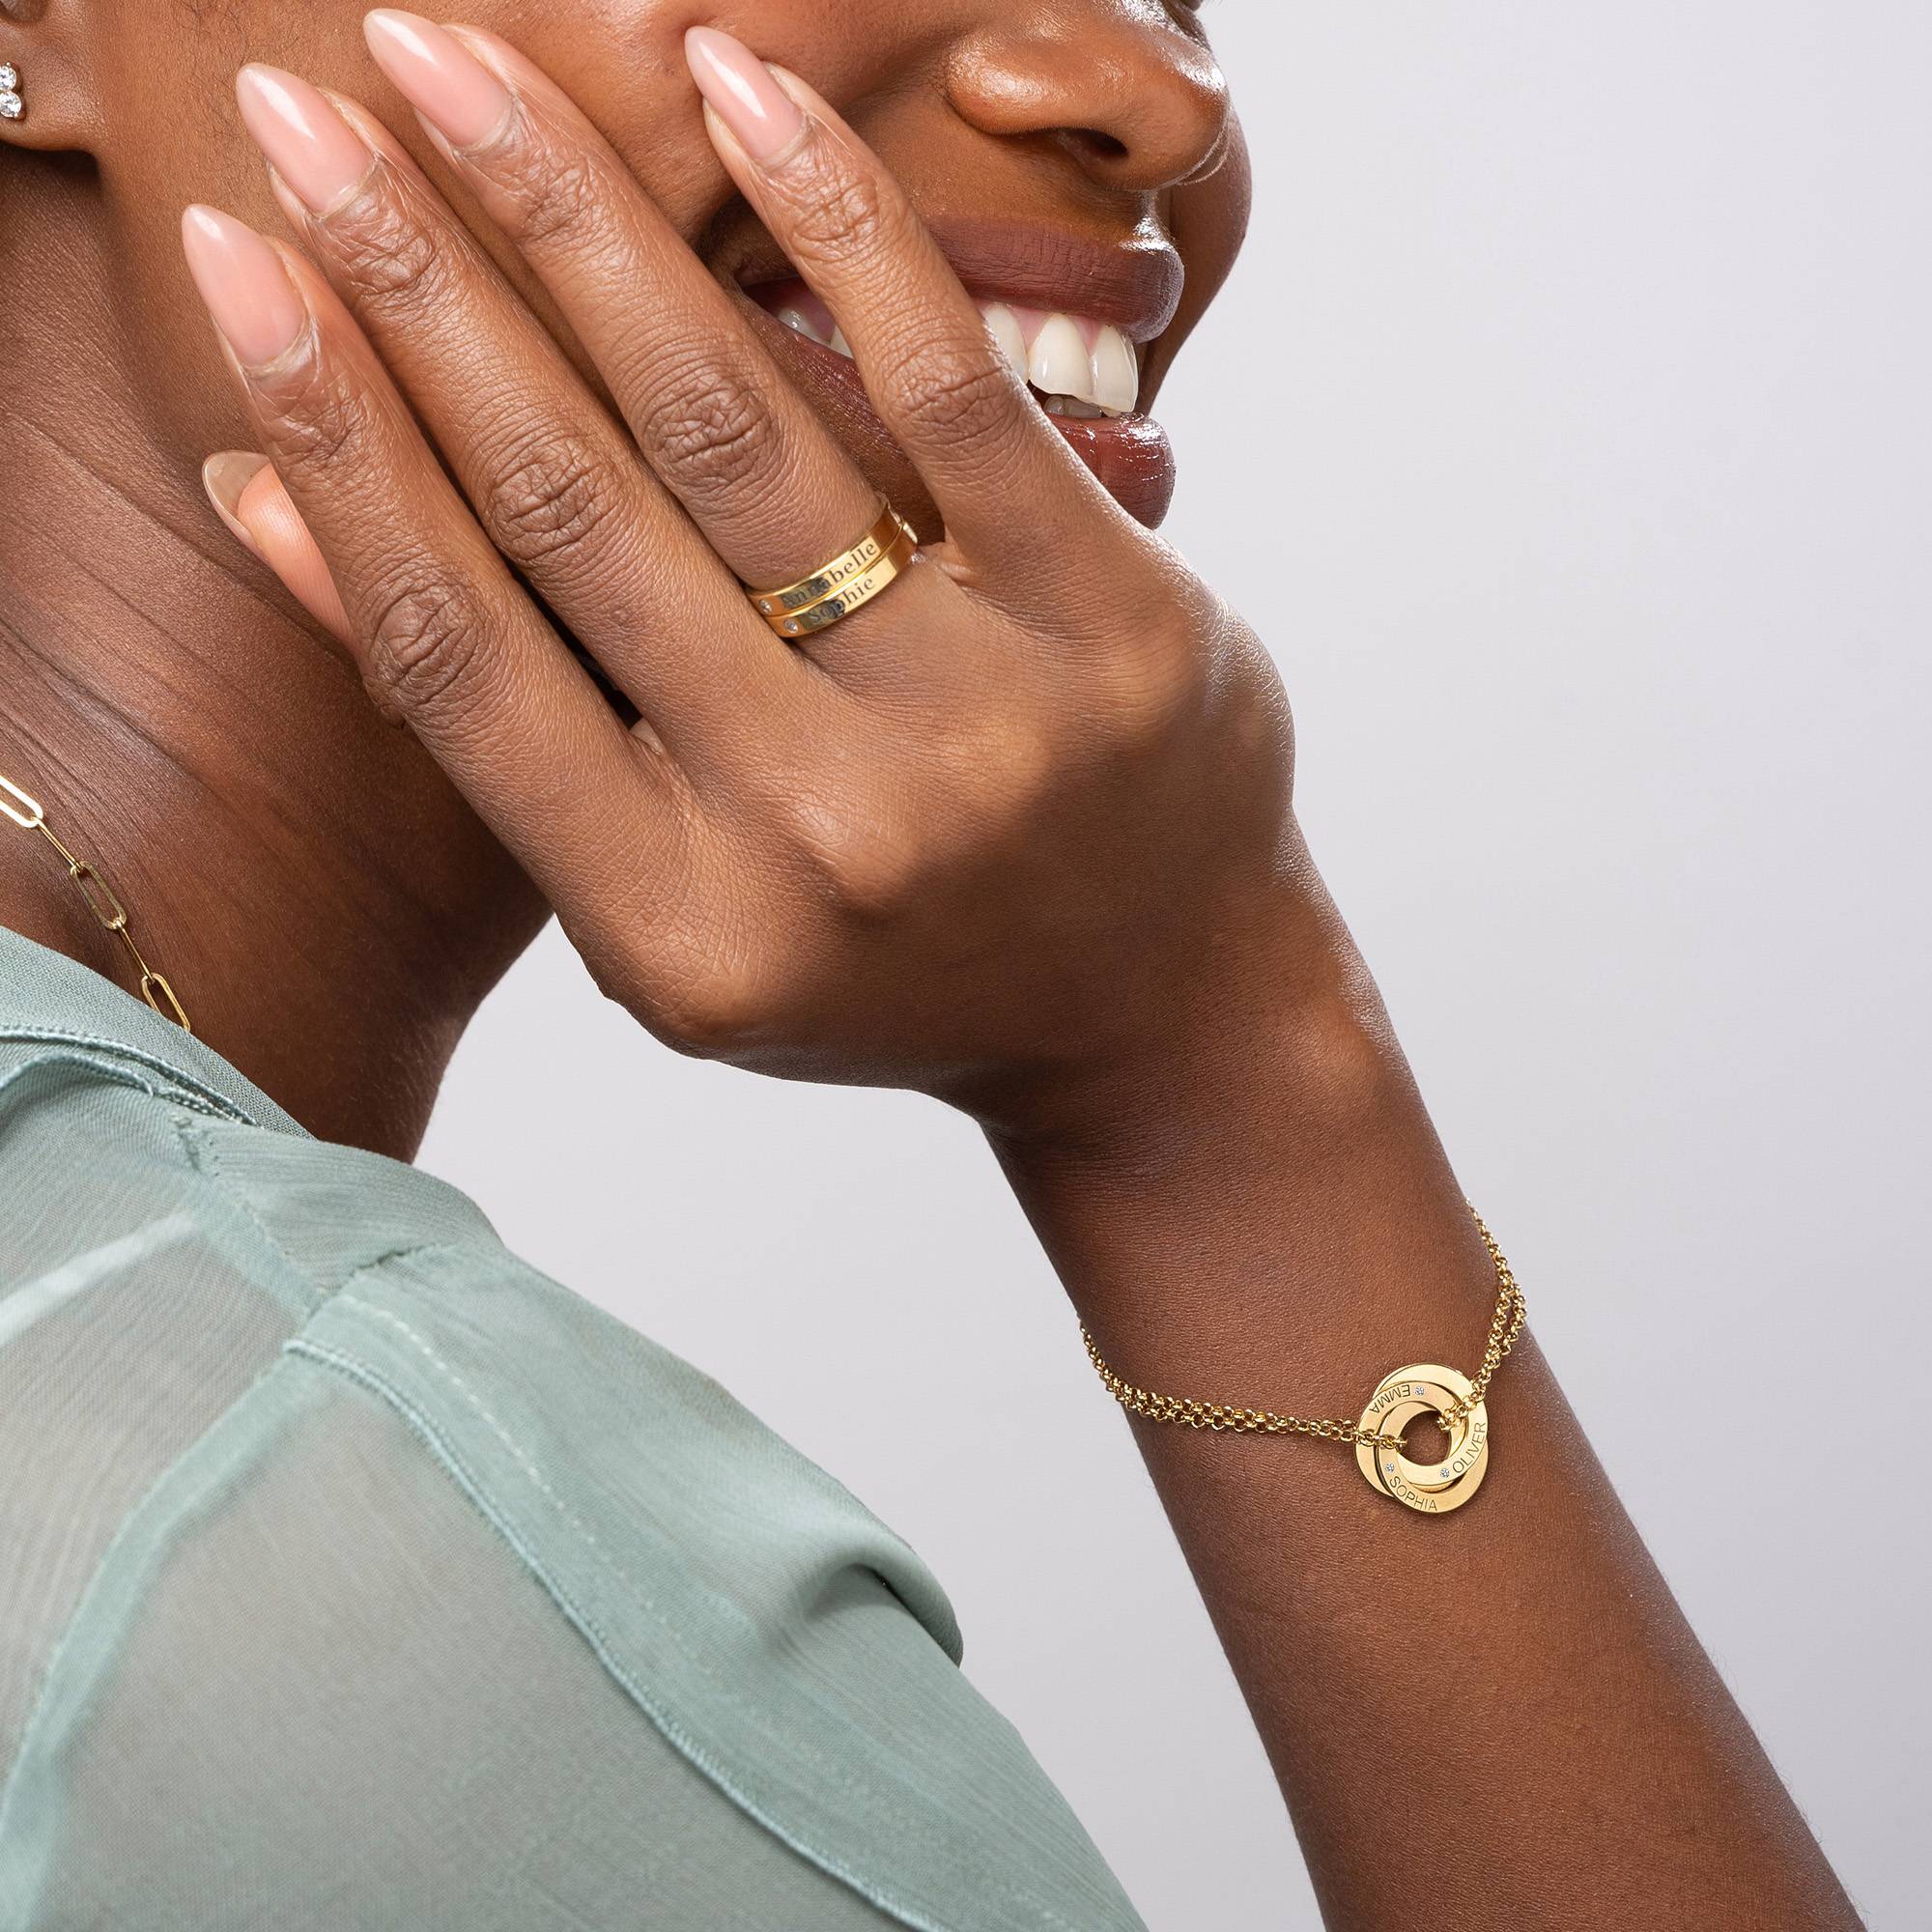 18k Goud Vergulde Lucy Russische Ring Armband met Diamant-4 Productfoto